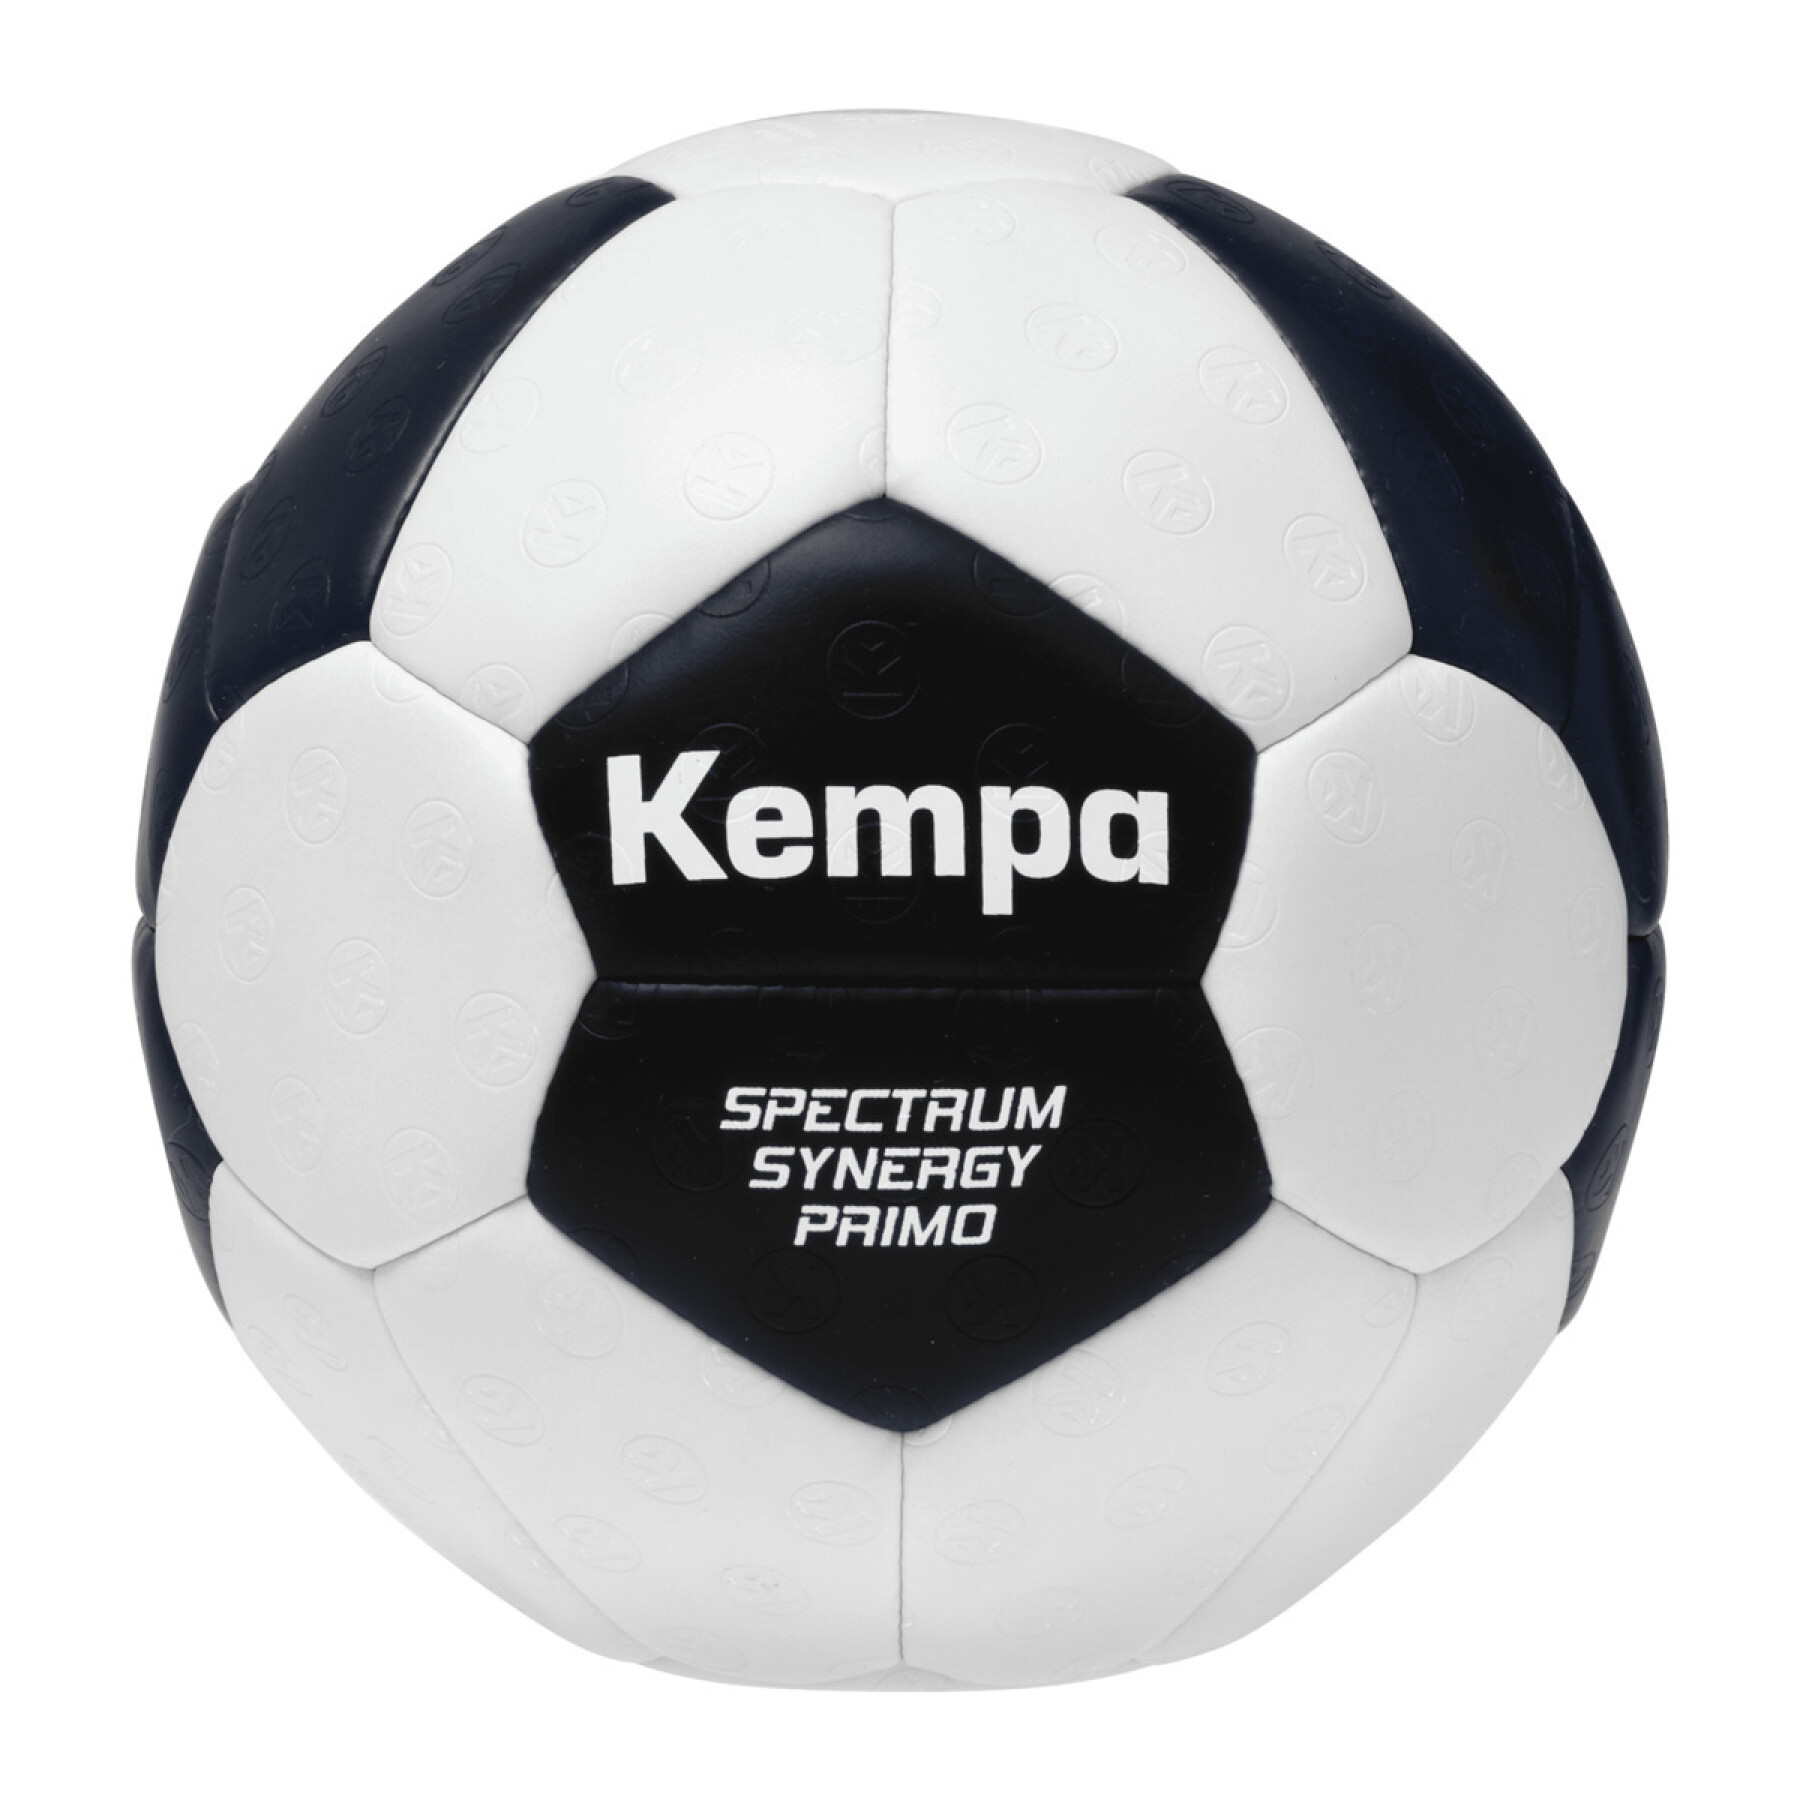 Handball Kempa Spectrum Synergy Primo Game Changer